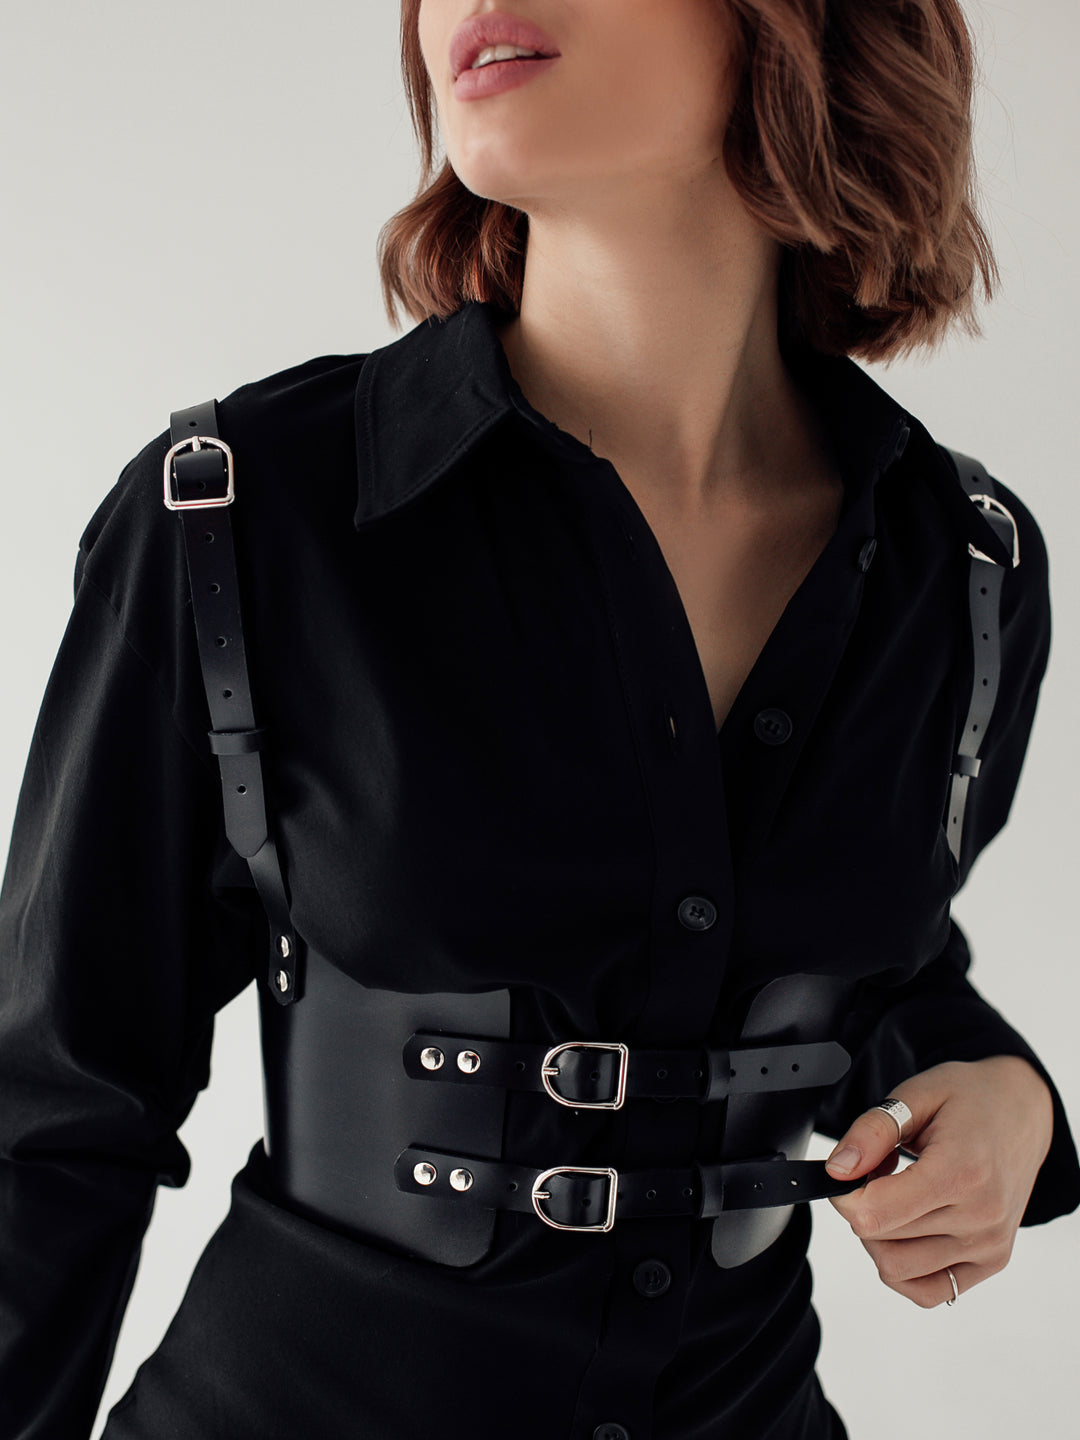 Women's leather corset belt buy in online store, best price